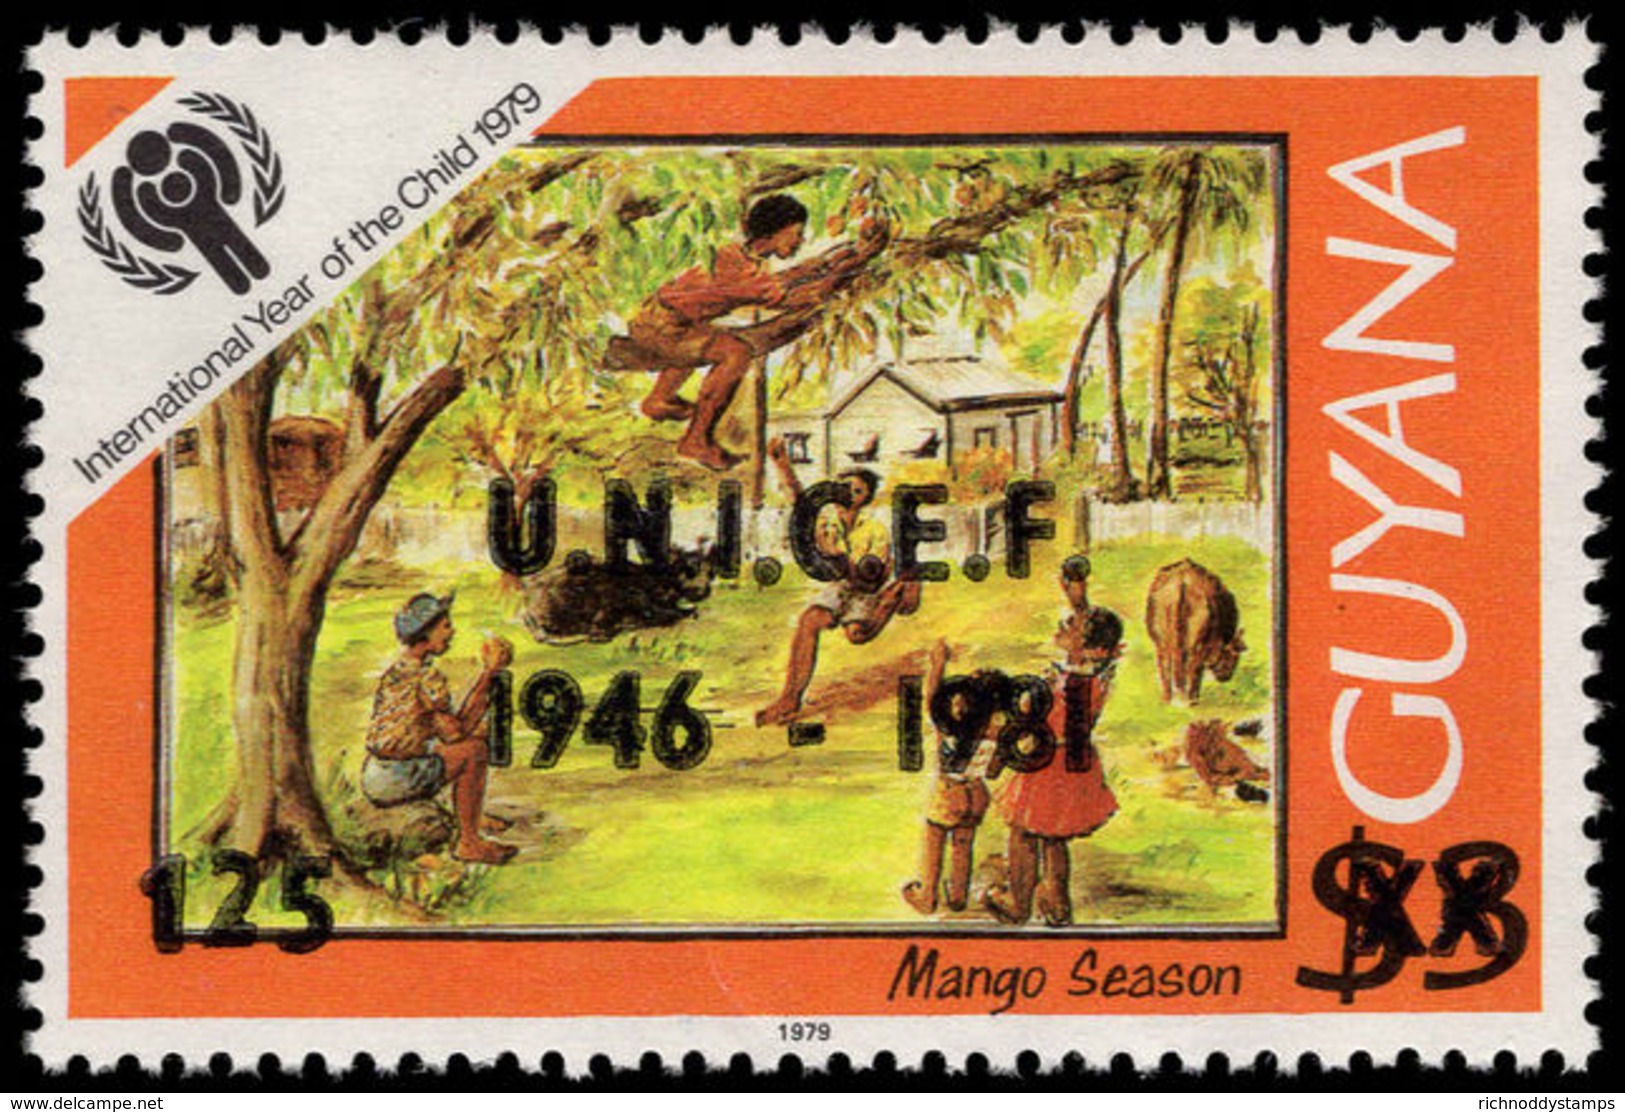 Guyana 1981 UNICEF Unmounted Mint. - Guyana (1966-...)